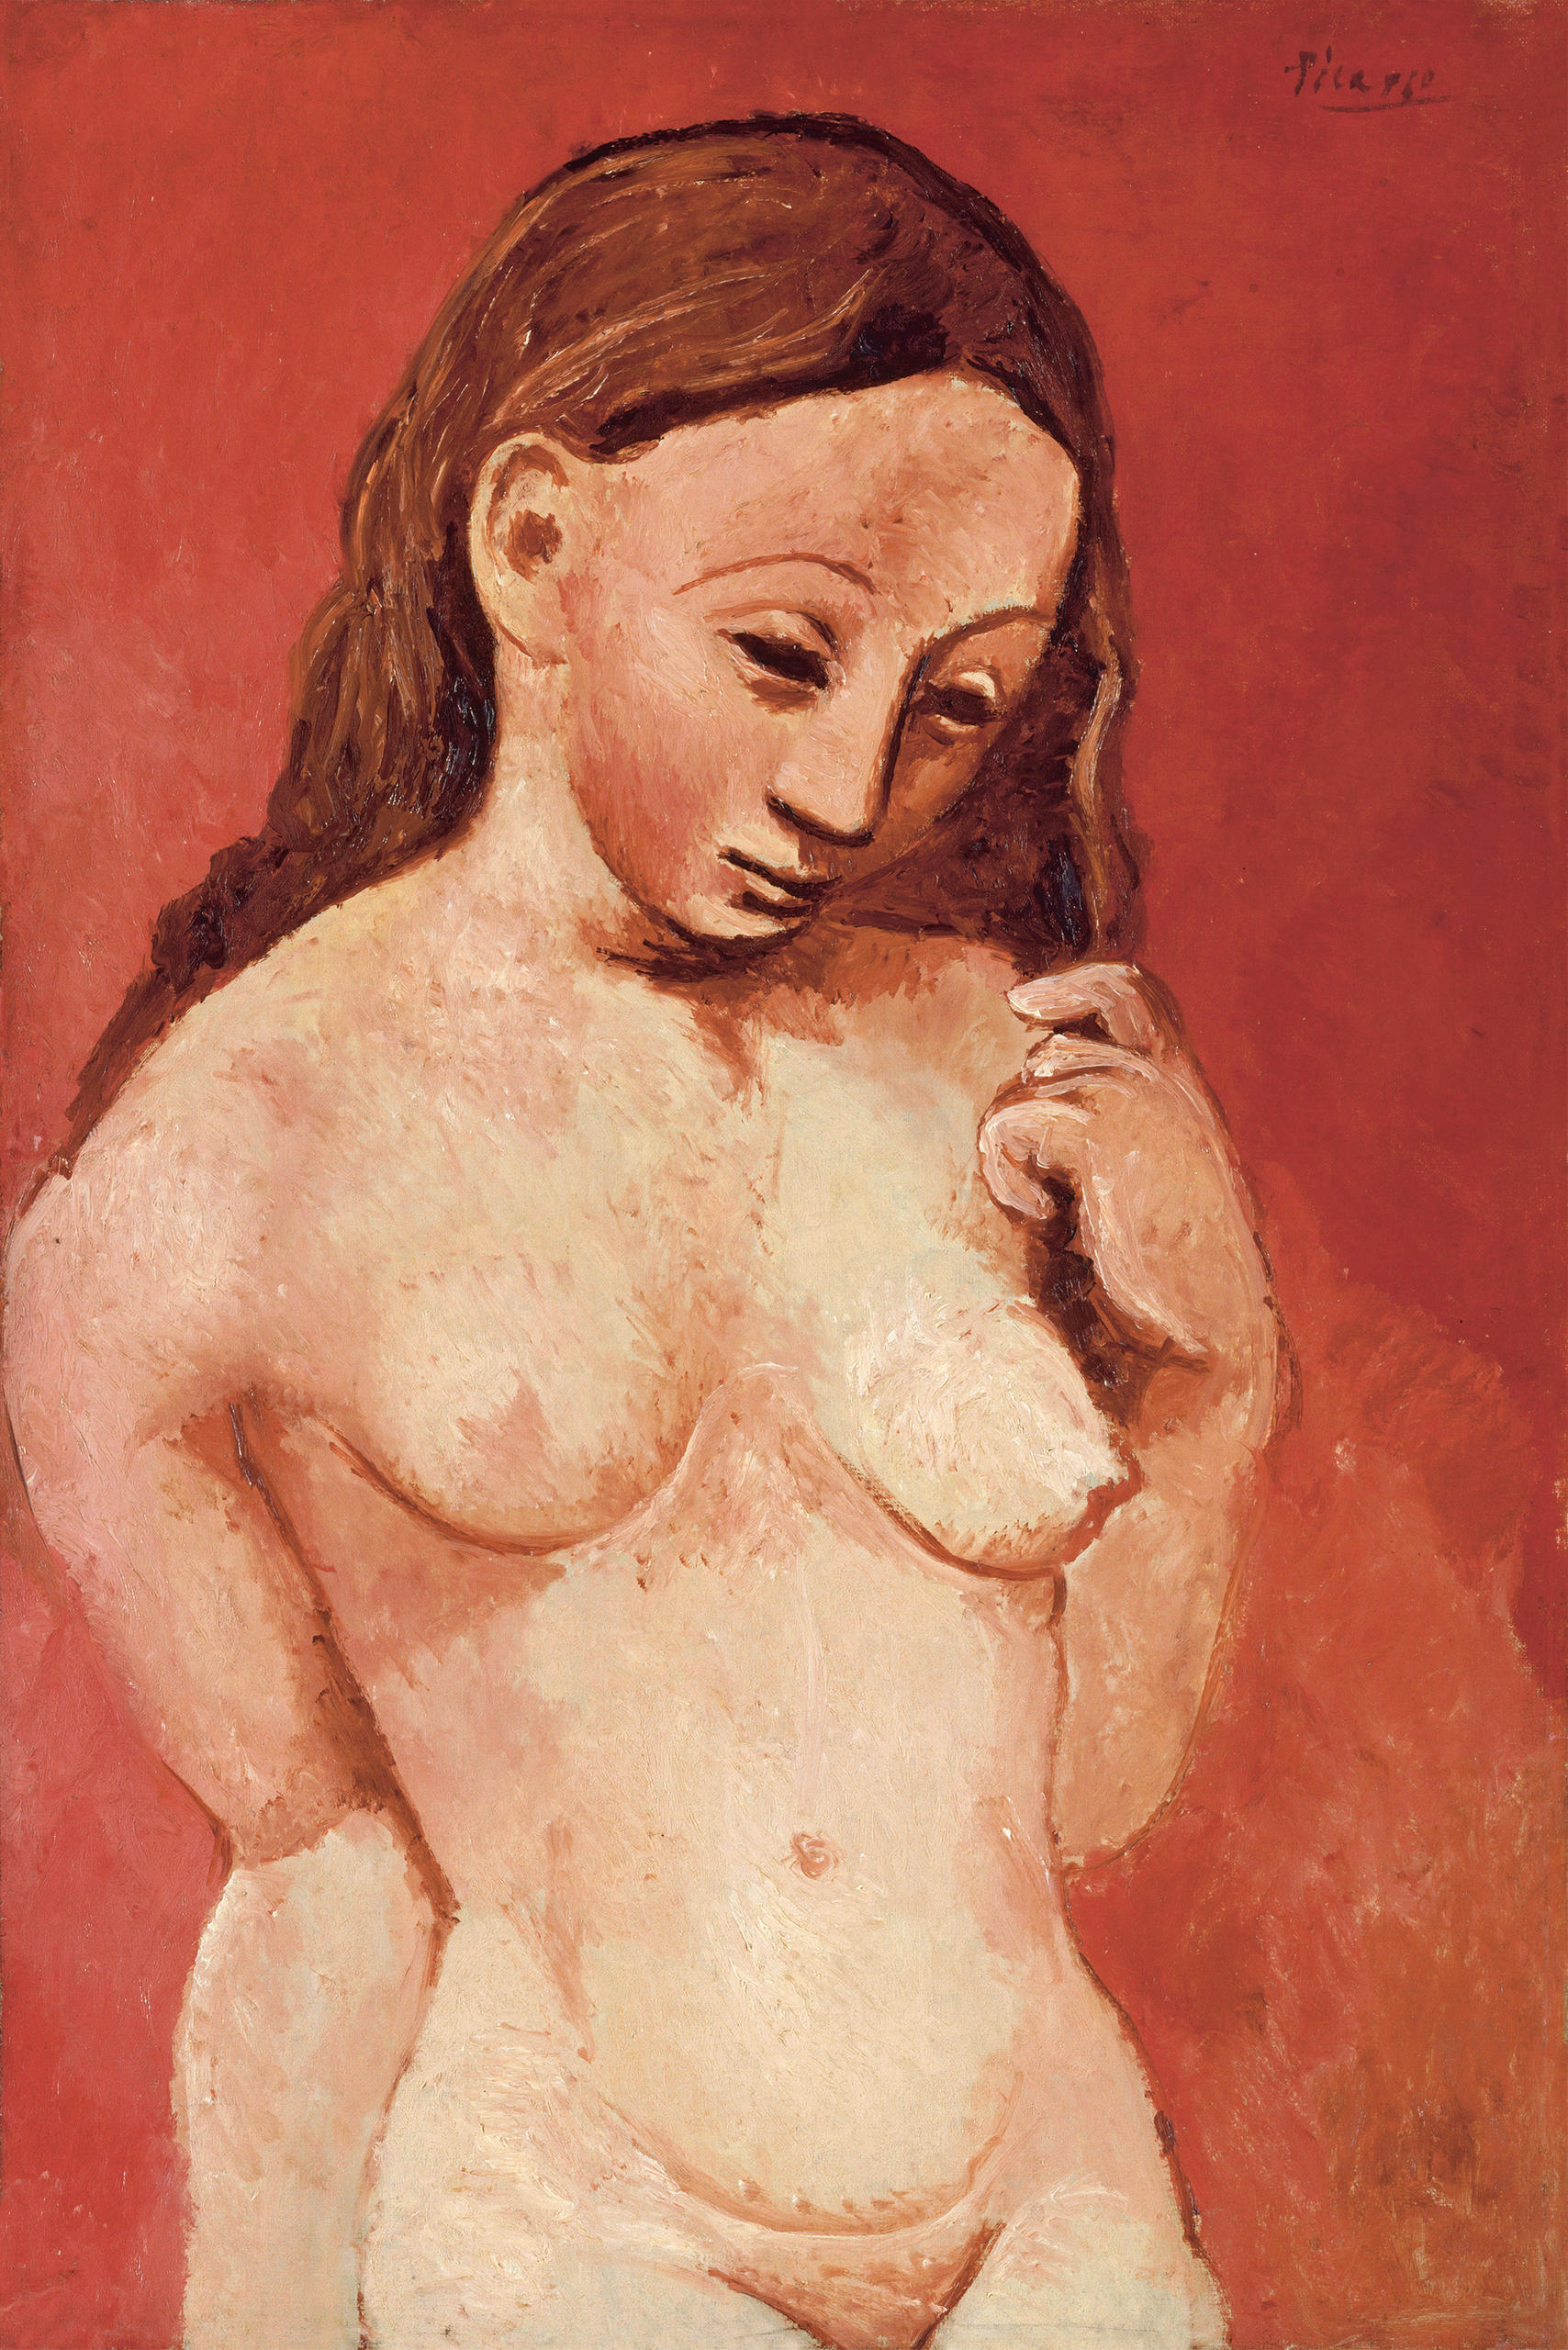 Picasso, desnudo sobre fondo rojo